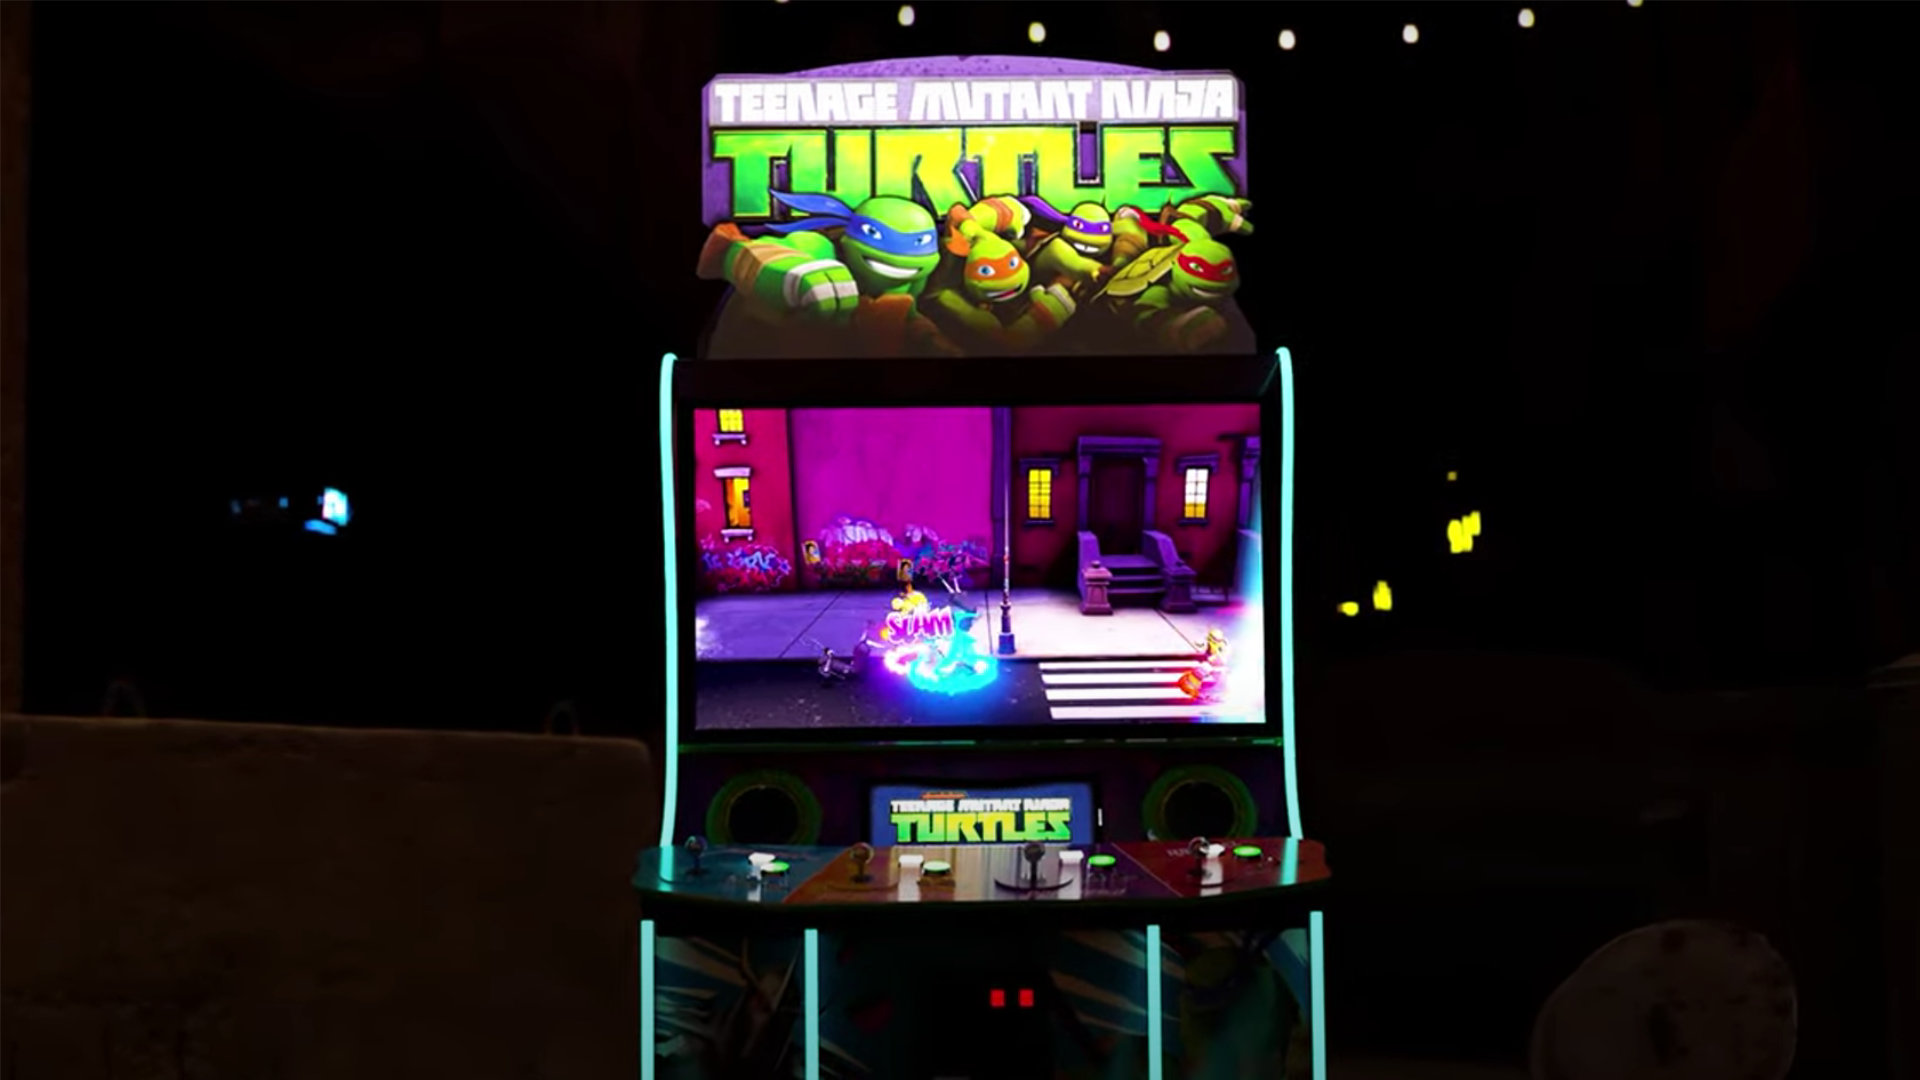 Turtles feiern Comeback: Arcade-Klassiker für neue Konsolen geplant